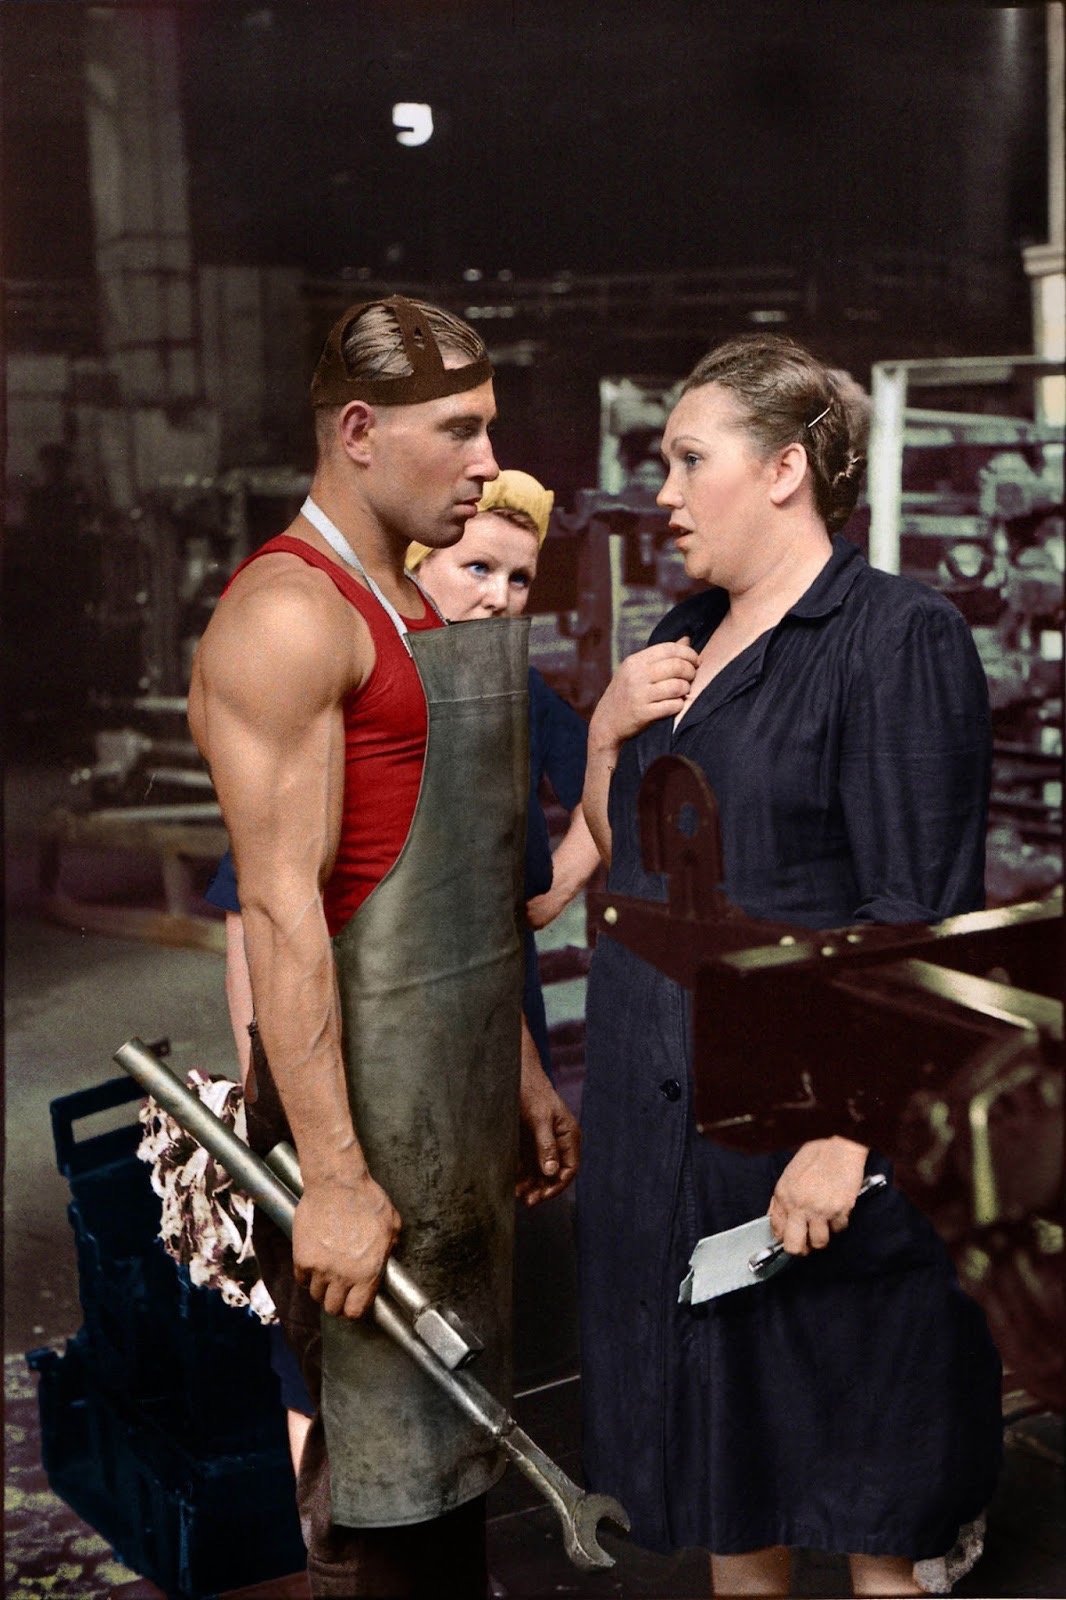 Ouvrier et superviseur dans une usine automobile, moścow, union soviétique, 1954.